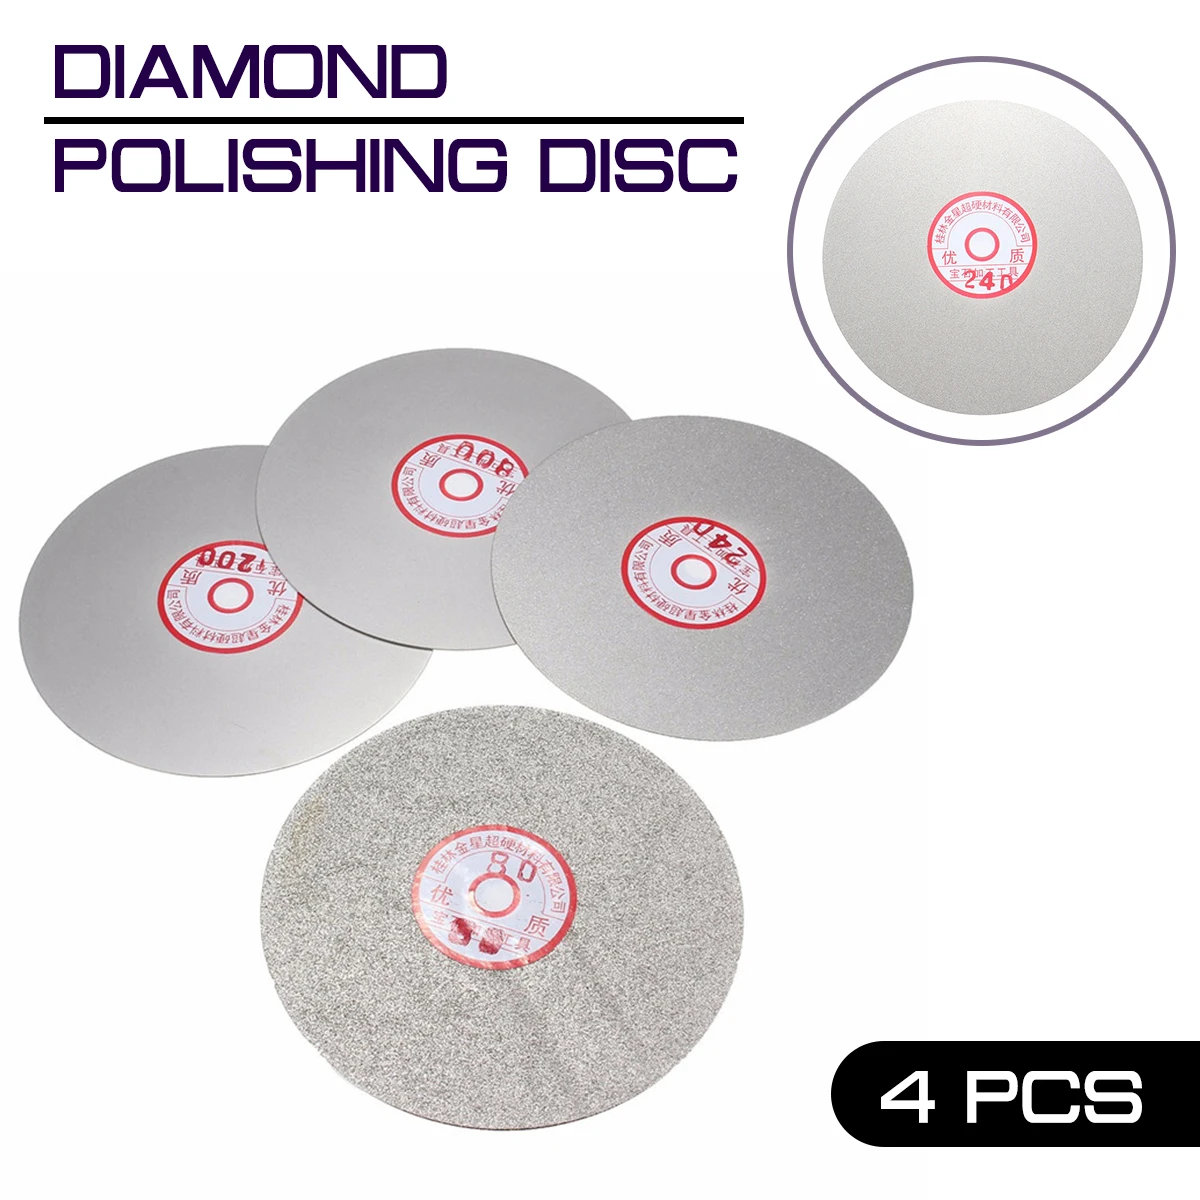 

4pcs/set Diamond Polishing Disc 600 800 1200 3000 Grit Lapping Grinding 6" Flat Lap Grinding Wheel Disc Tool Polishing Laps